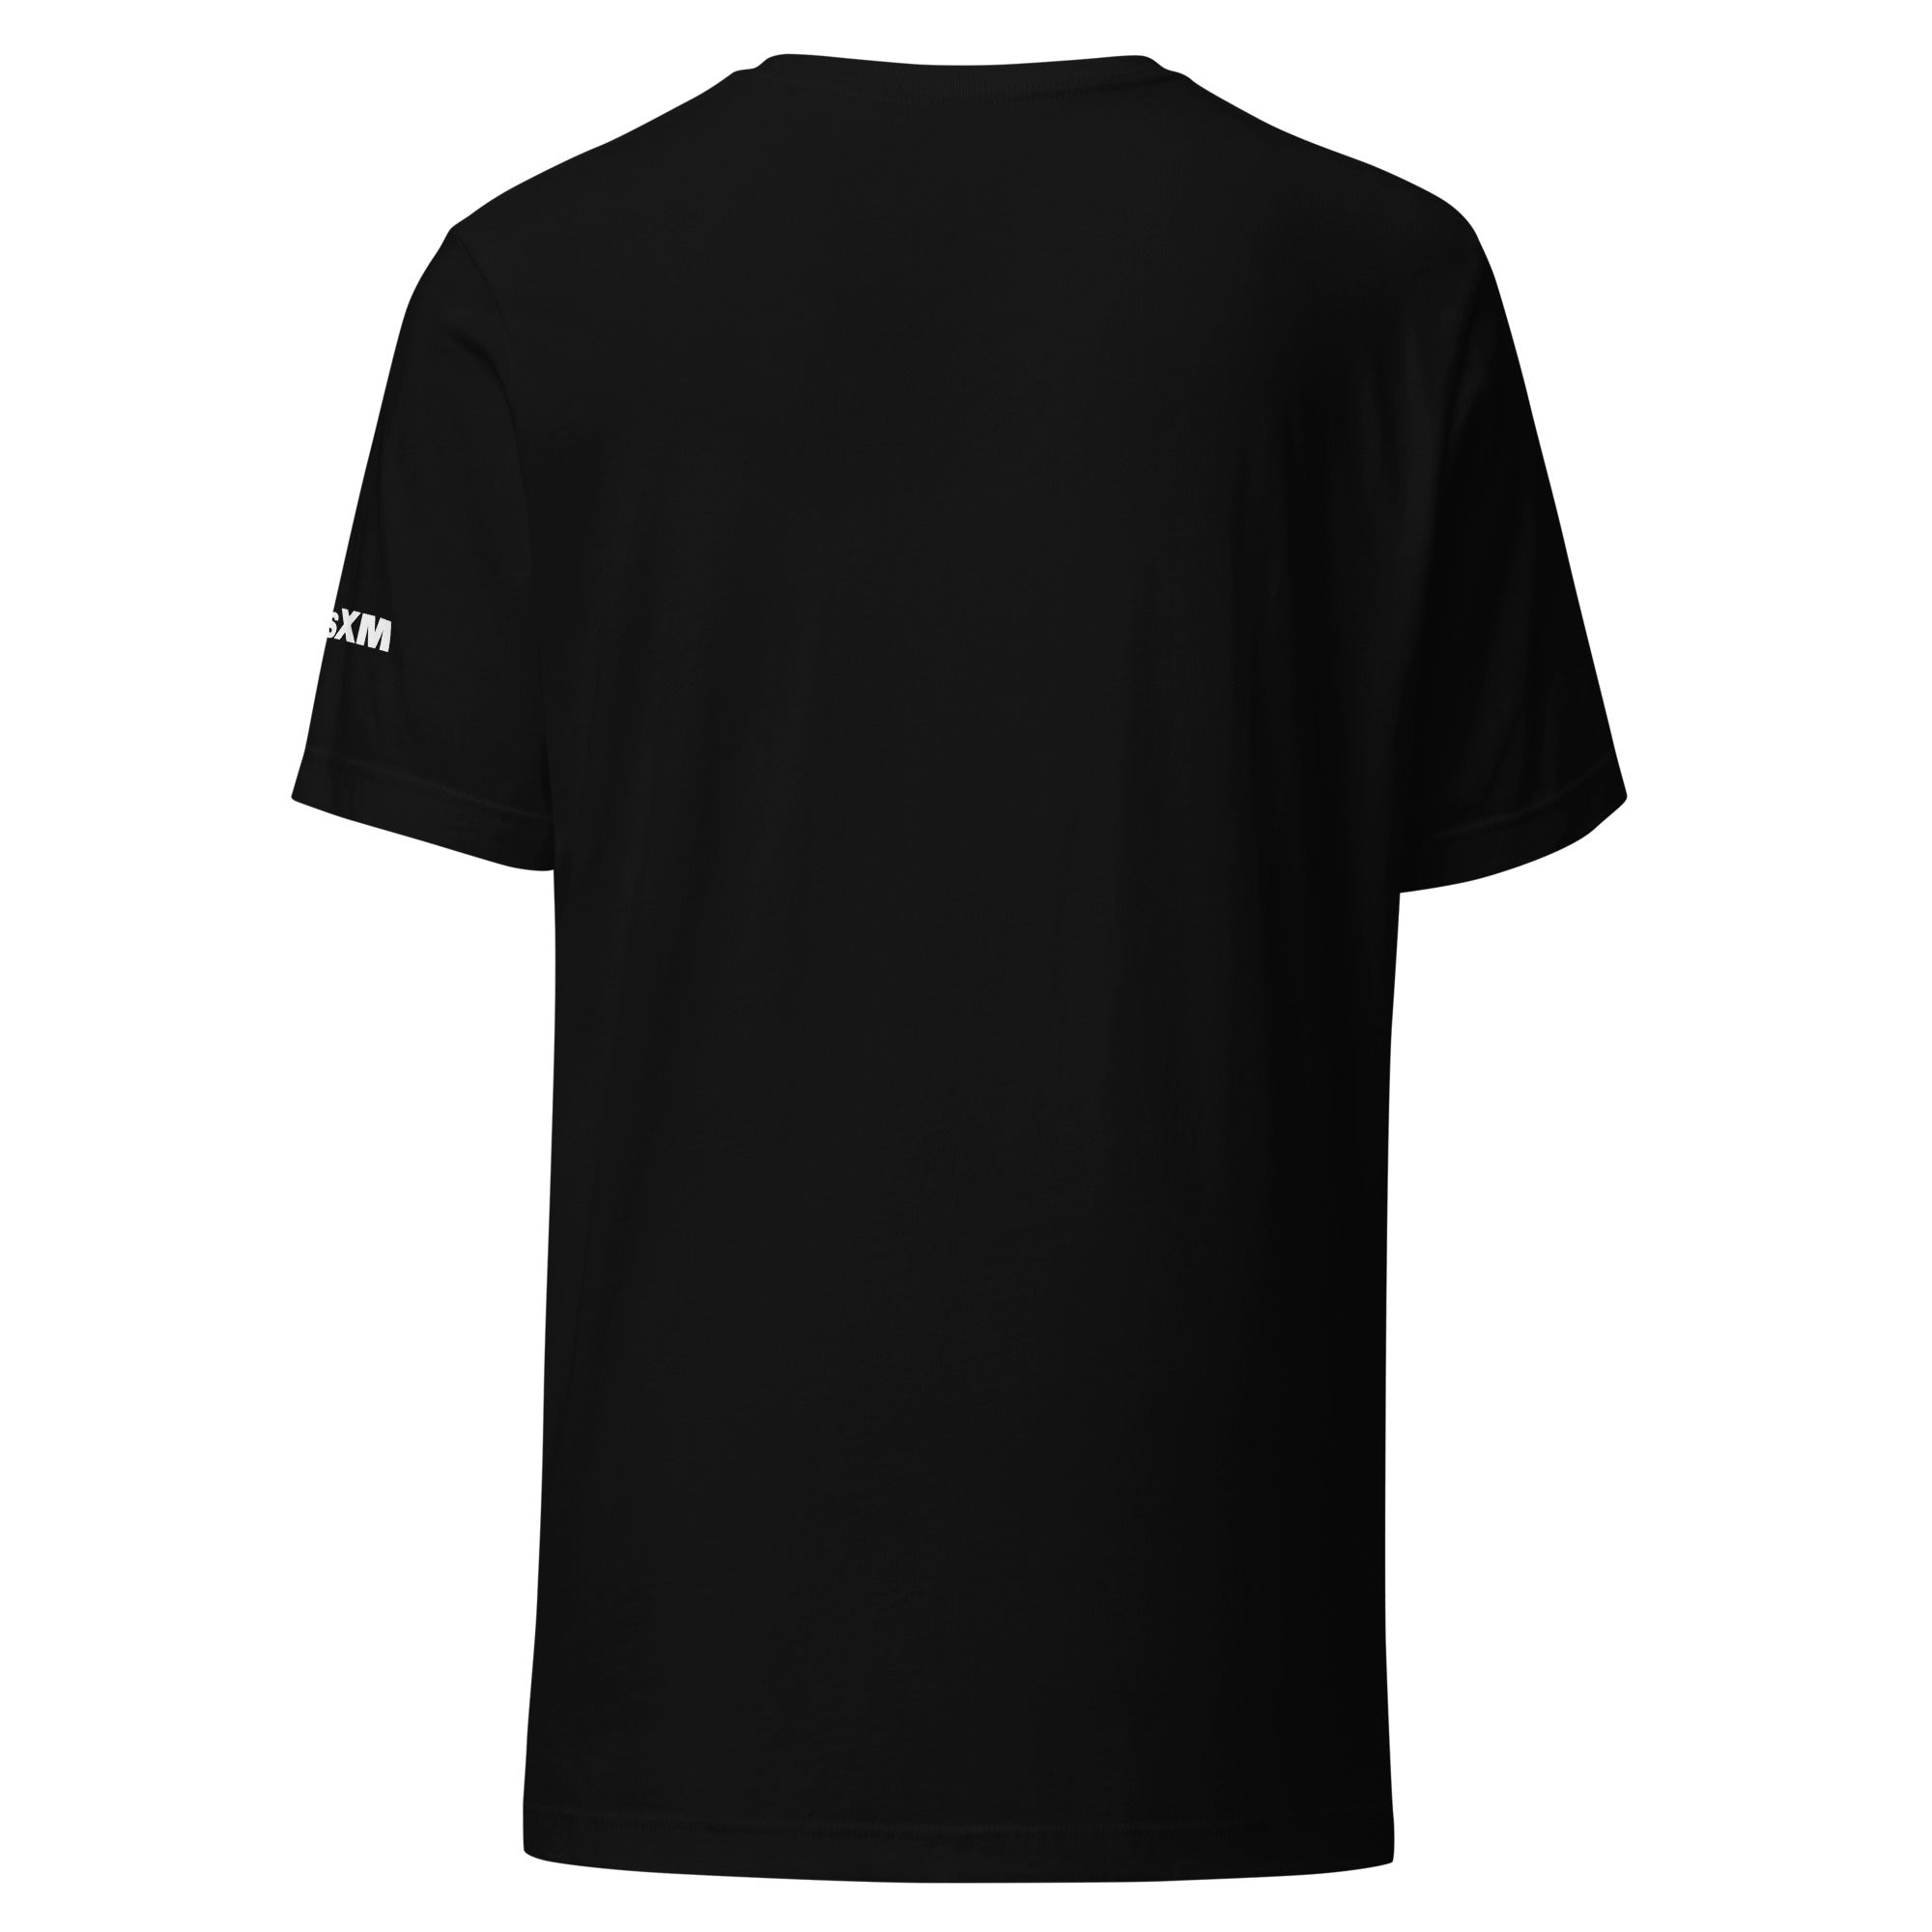 Yacht Rock: T-shirt (Black)